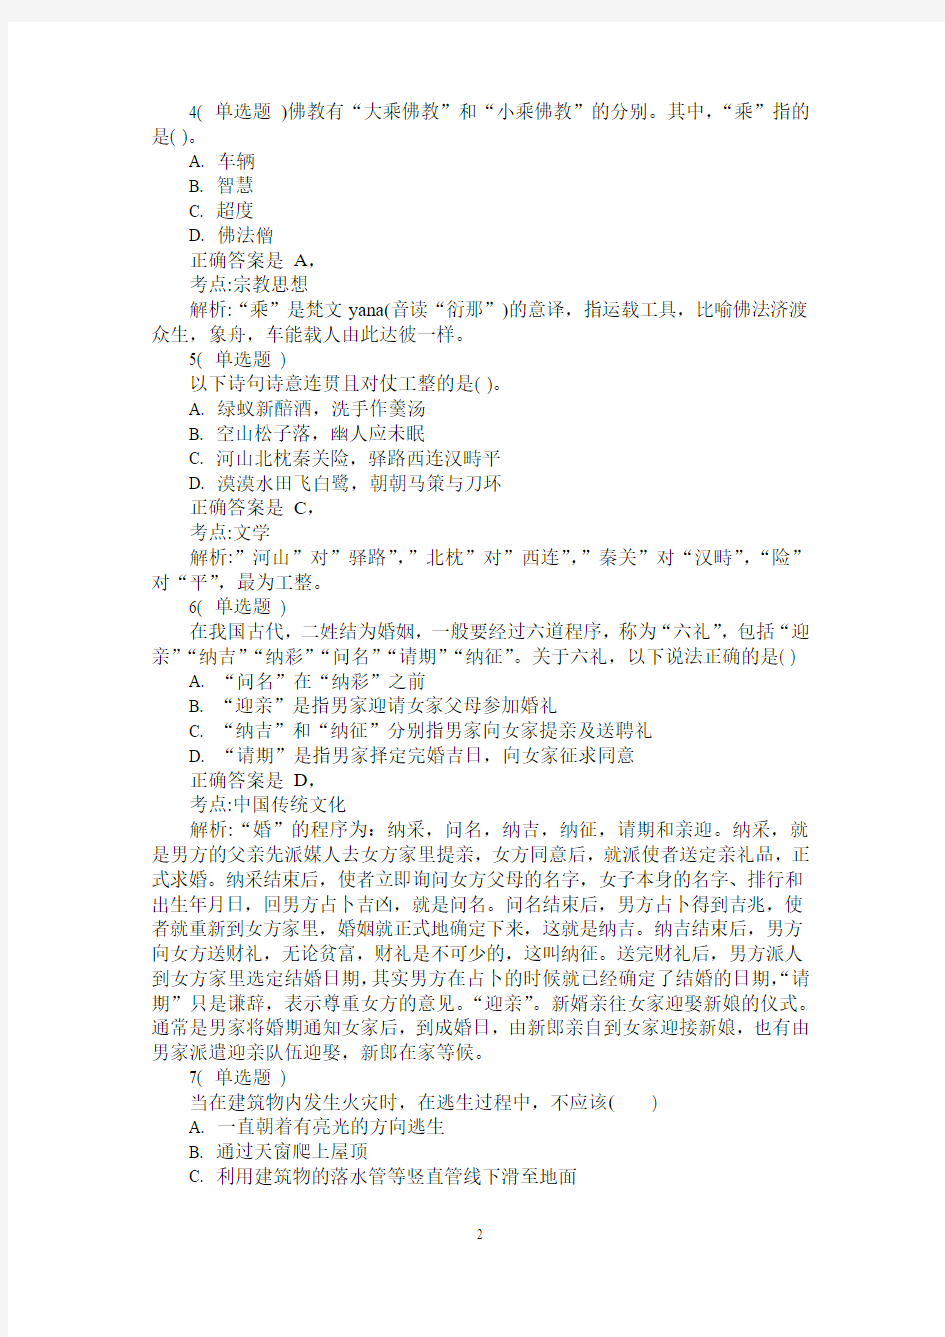 2014年广州市公务员考试《行测》真题及答案解析(100题完整版)